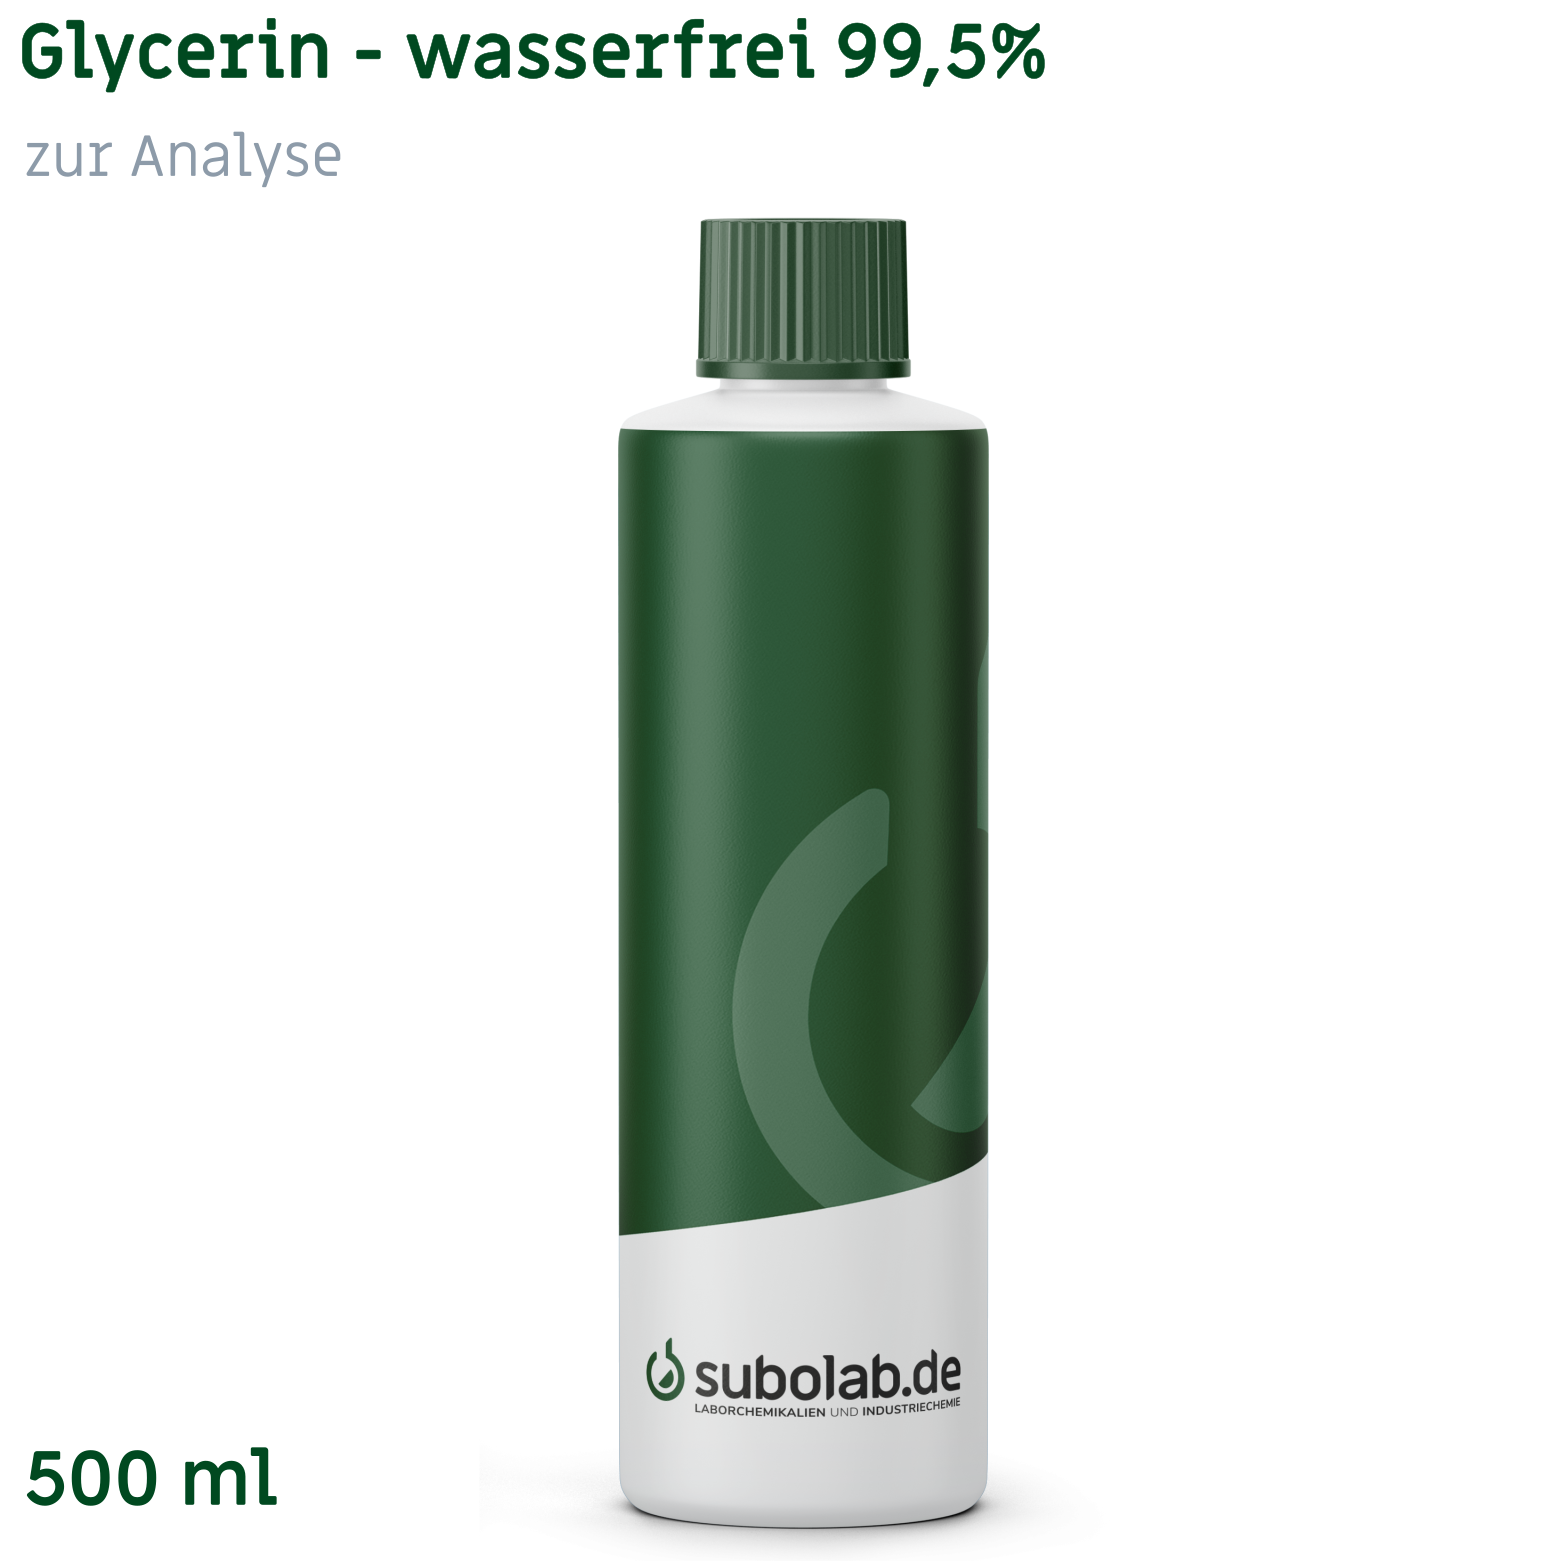 Bild von Glycerin - wasserfrei 99,5% zur Analyse (500 ml)